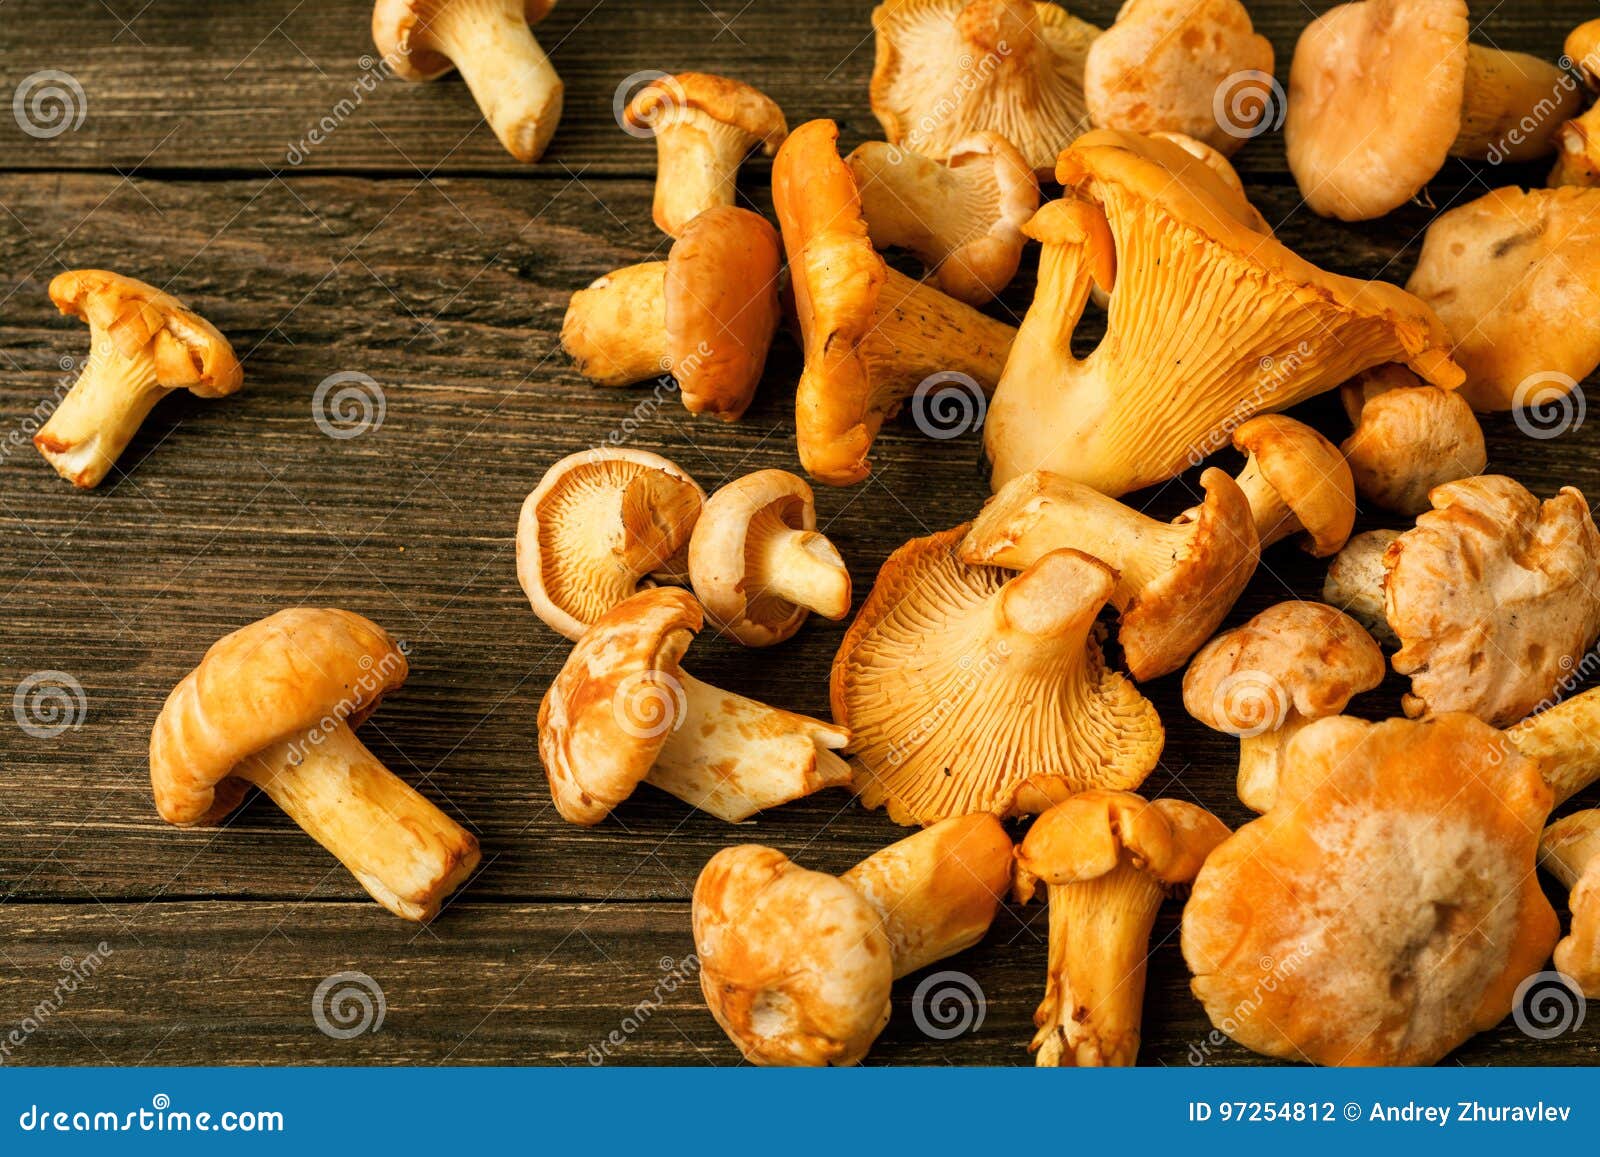 Prima selvagem crua dos cogumelos na tabela de madeira rústica